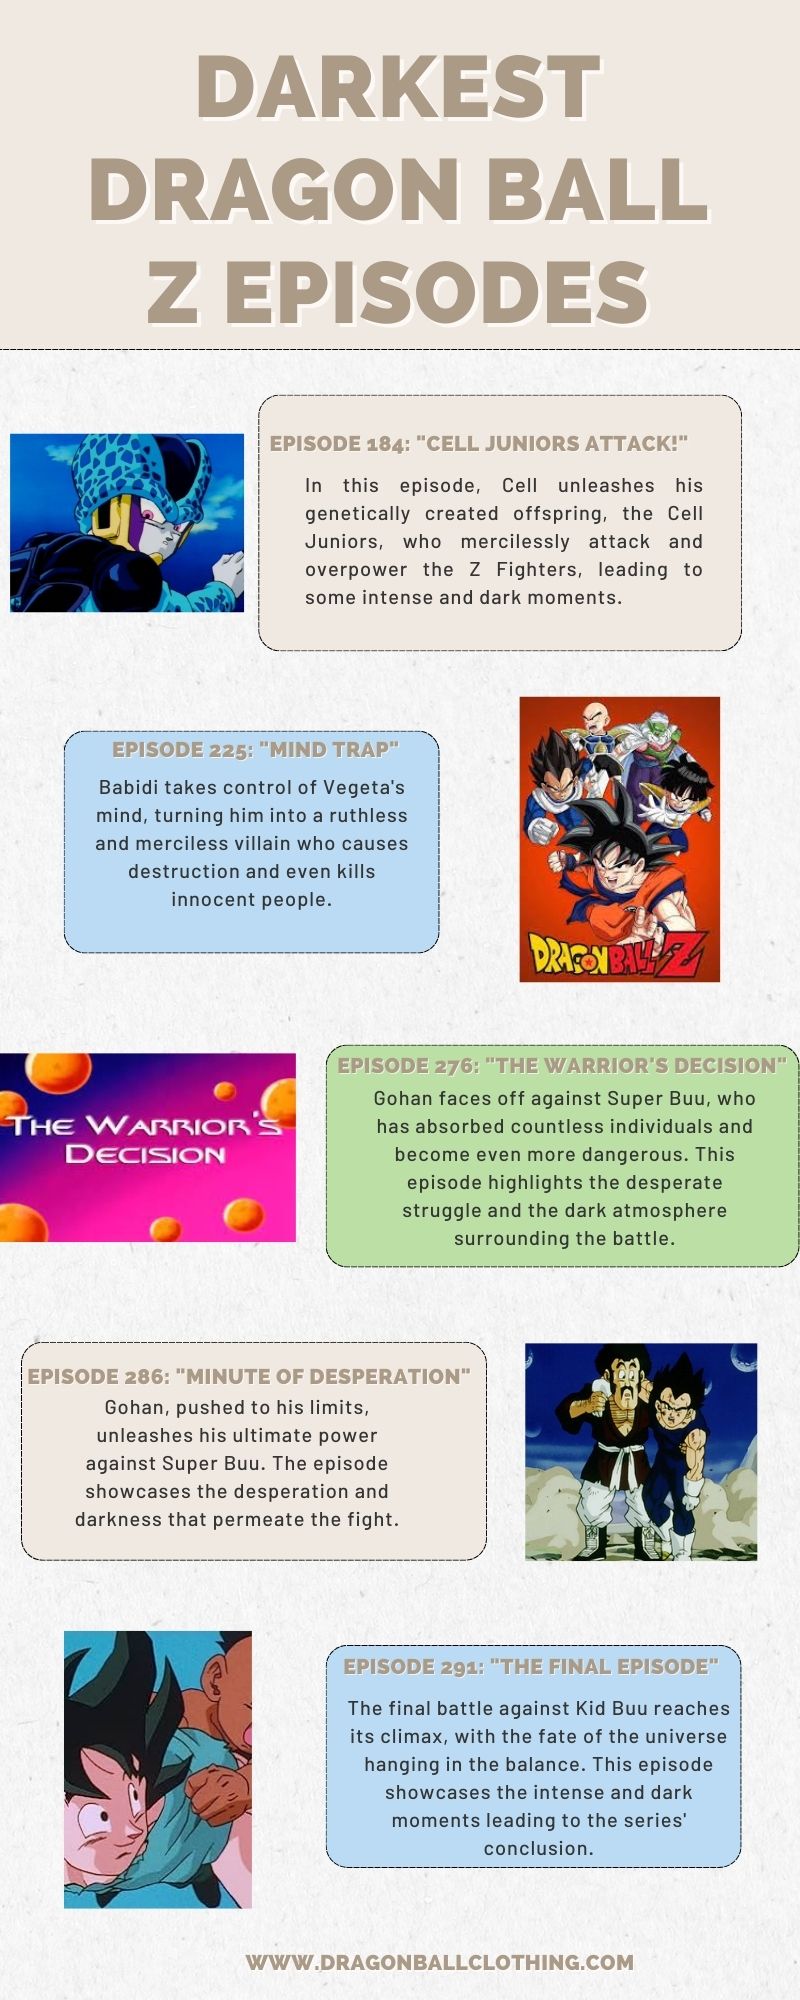 Darkest Dragon ball z episodes infographic